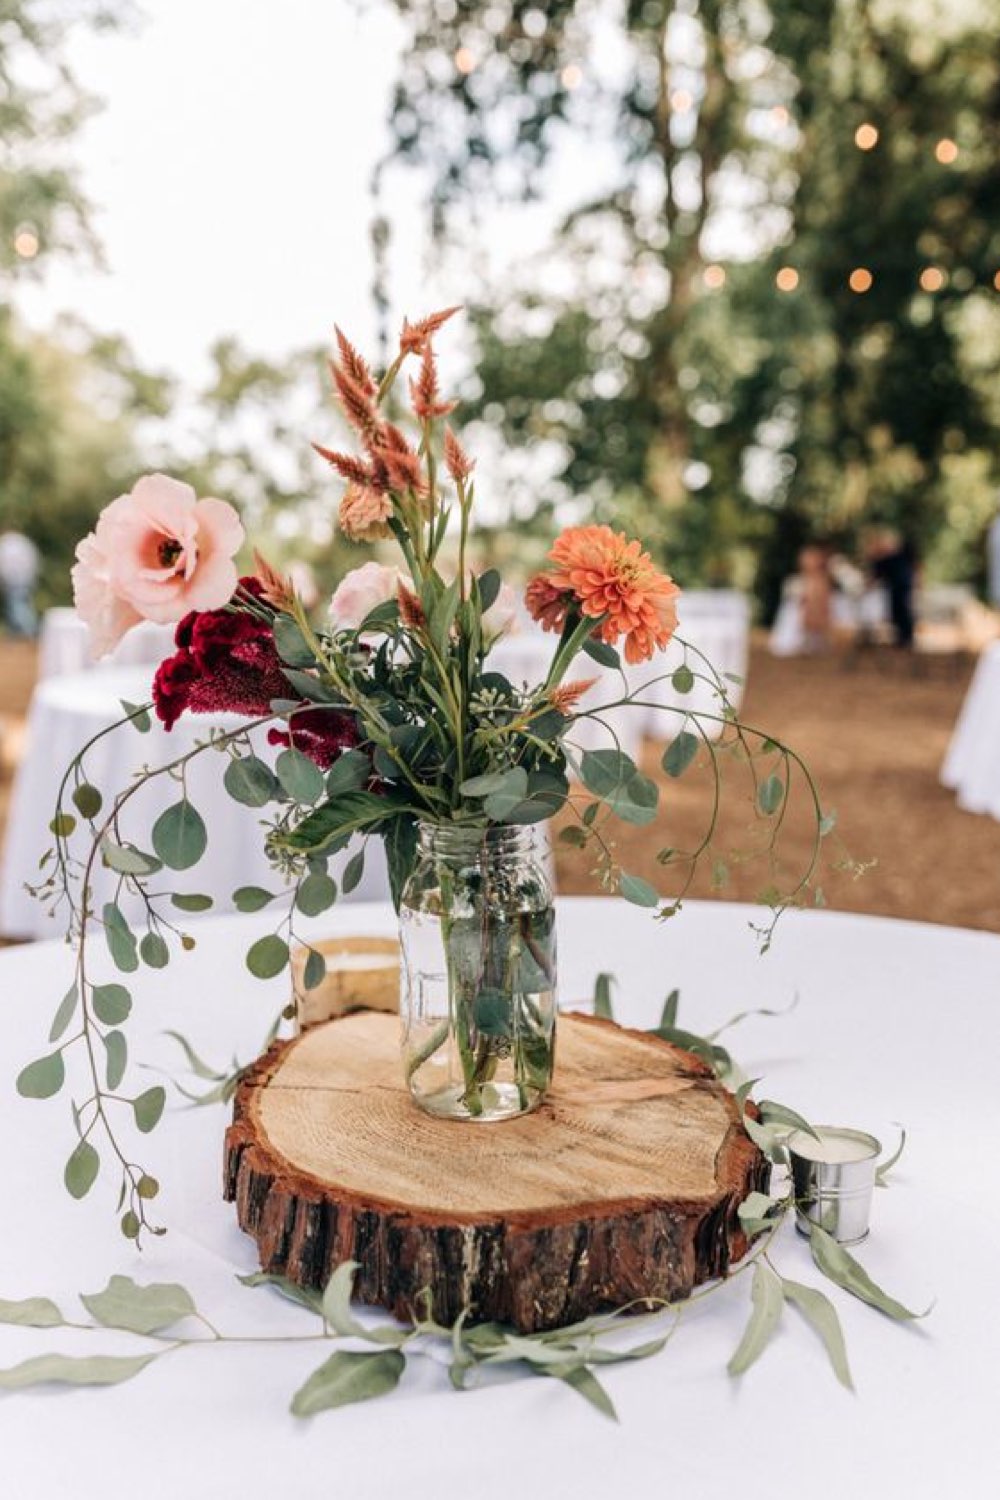 decoration mariage champetre romantique centre de table rondin de bois découpé vase en verre transparent bouquet de fleur coloré